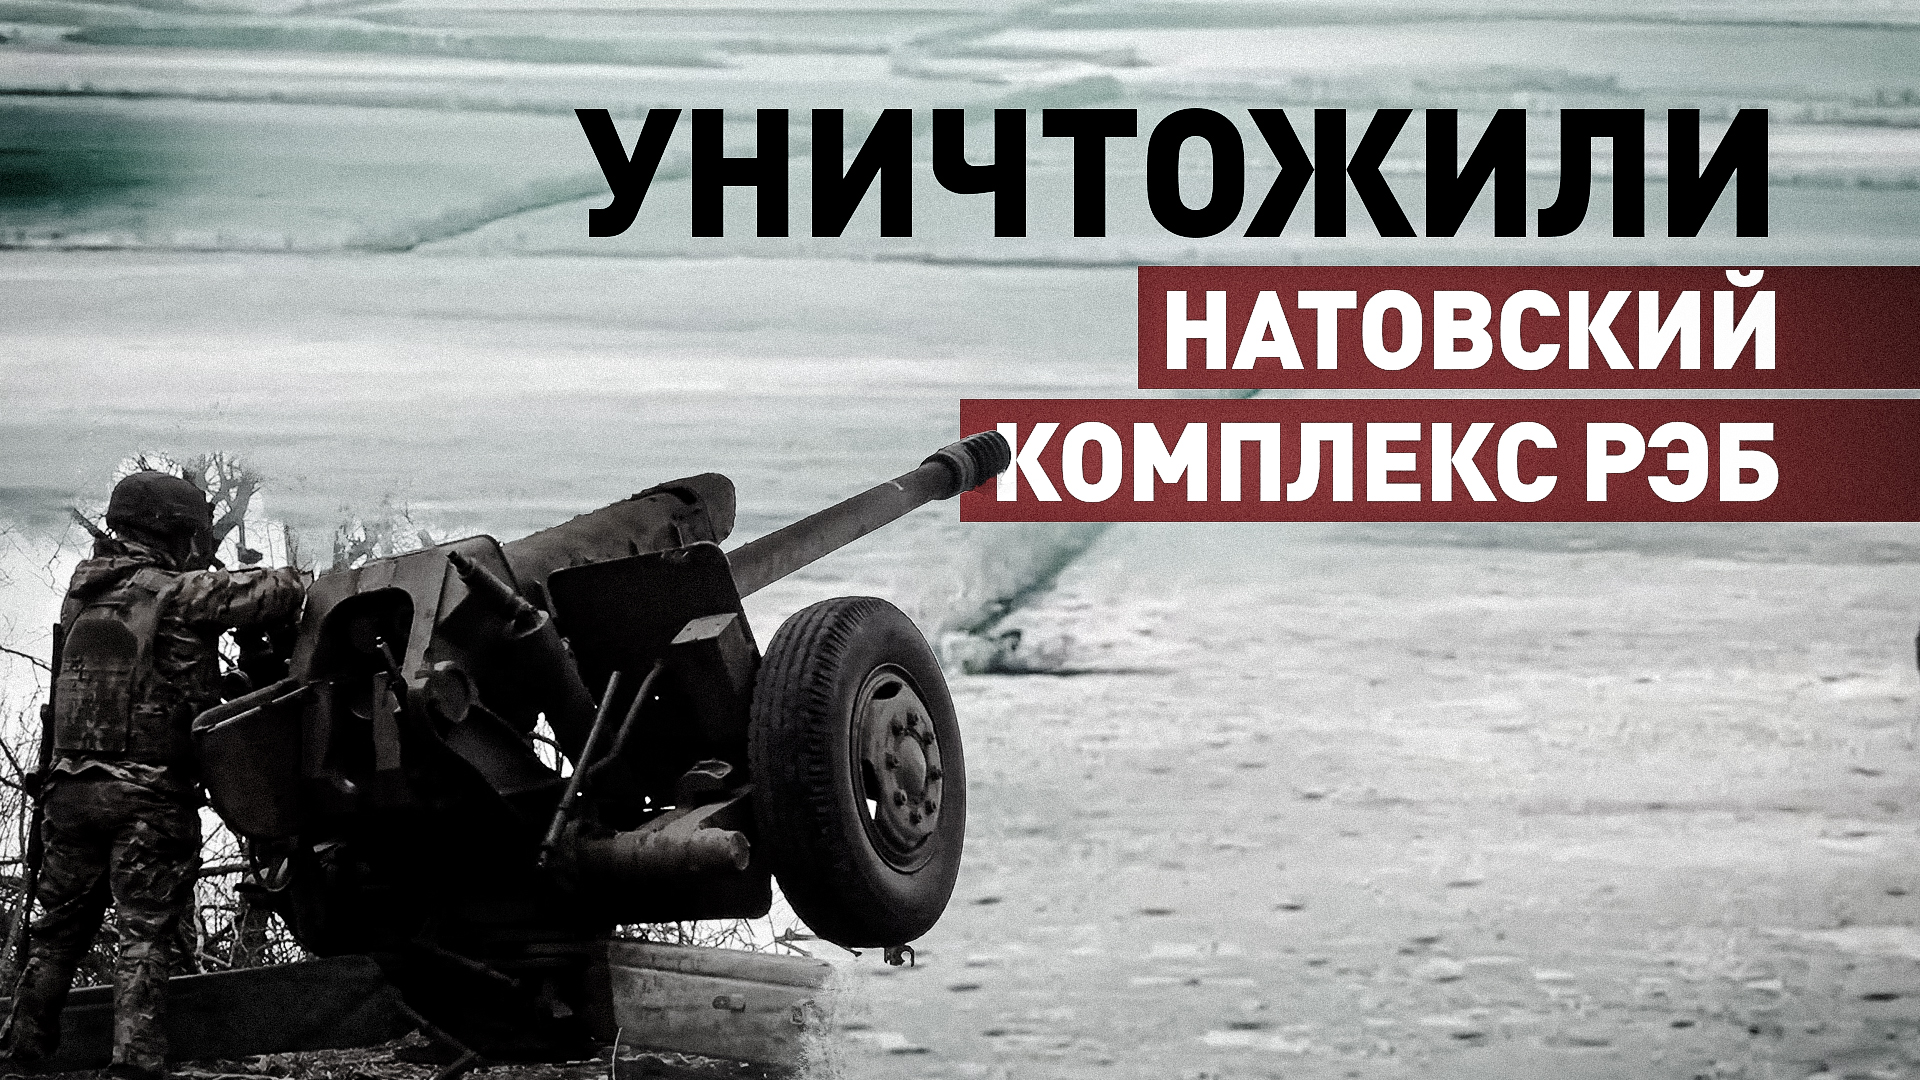 Прямое попадание: расчёты гаубиц Д-30 артиллерии ГрВ «Восток» уничтожили натовский комплекс РЭБ